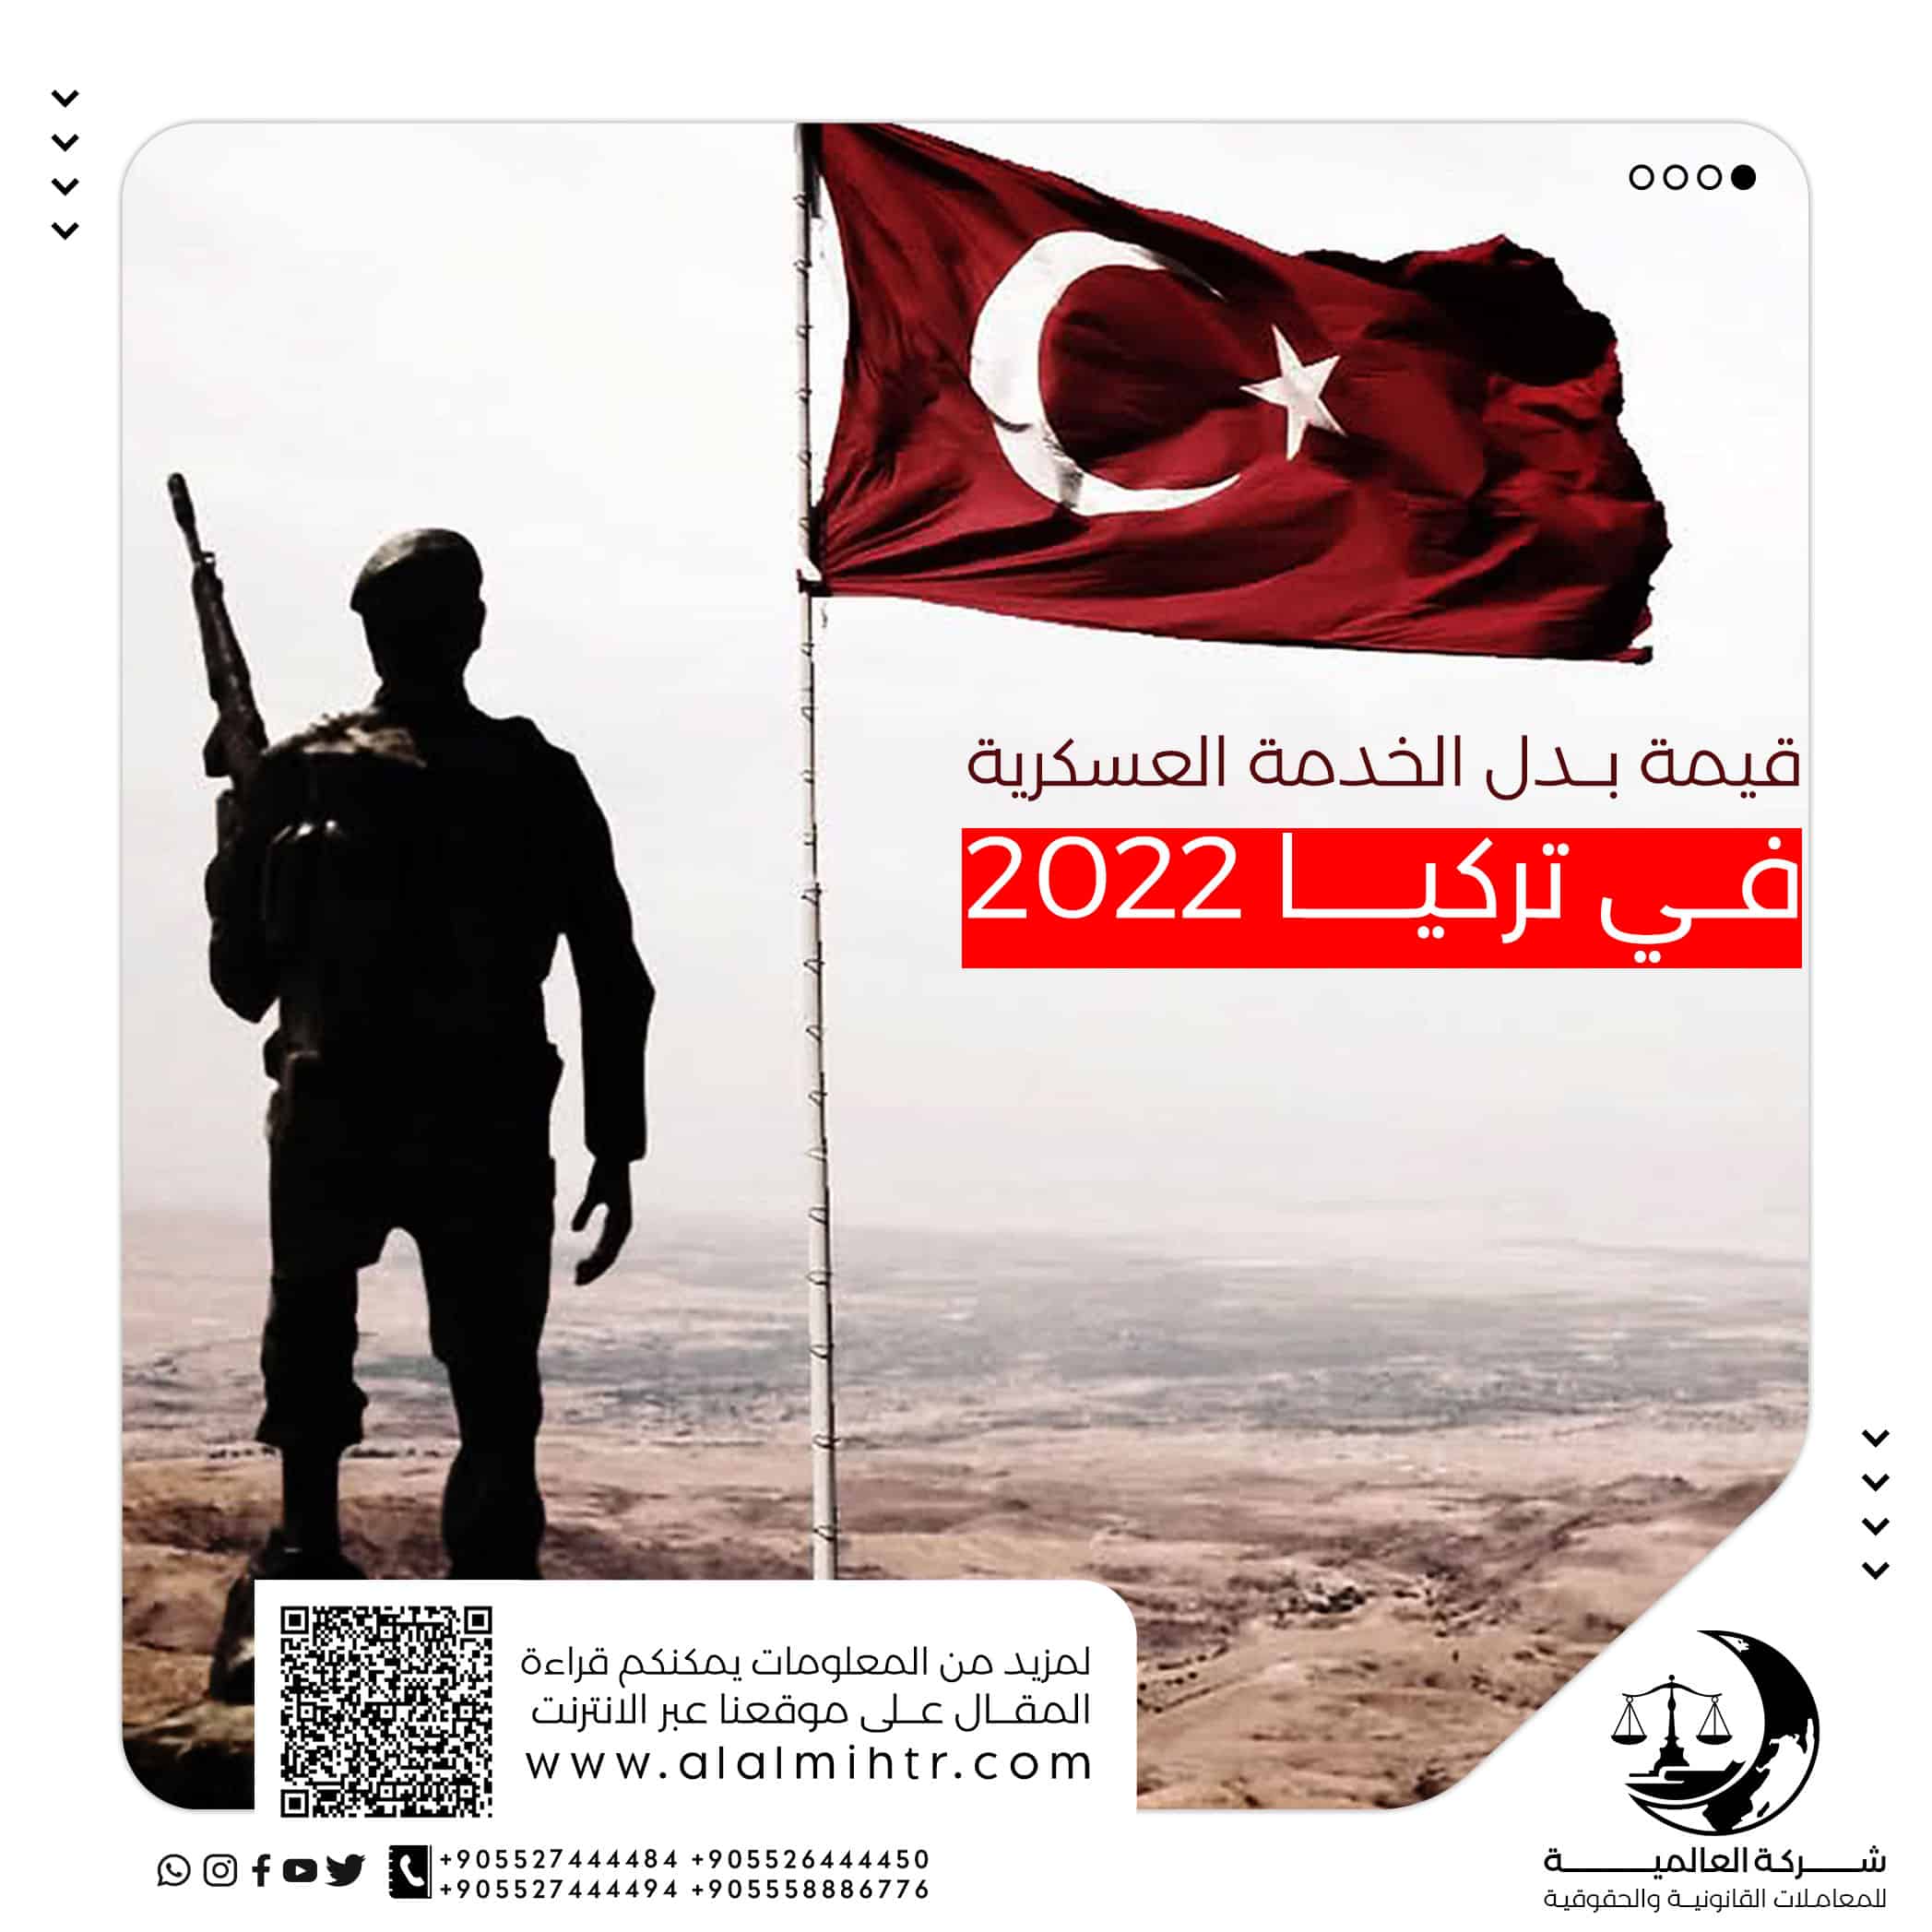 قيمة بدل الخدمة العسكرية في تركيا للحاصلين على الجنسية التركية ٢٠٢٢